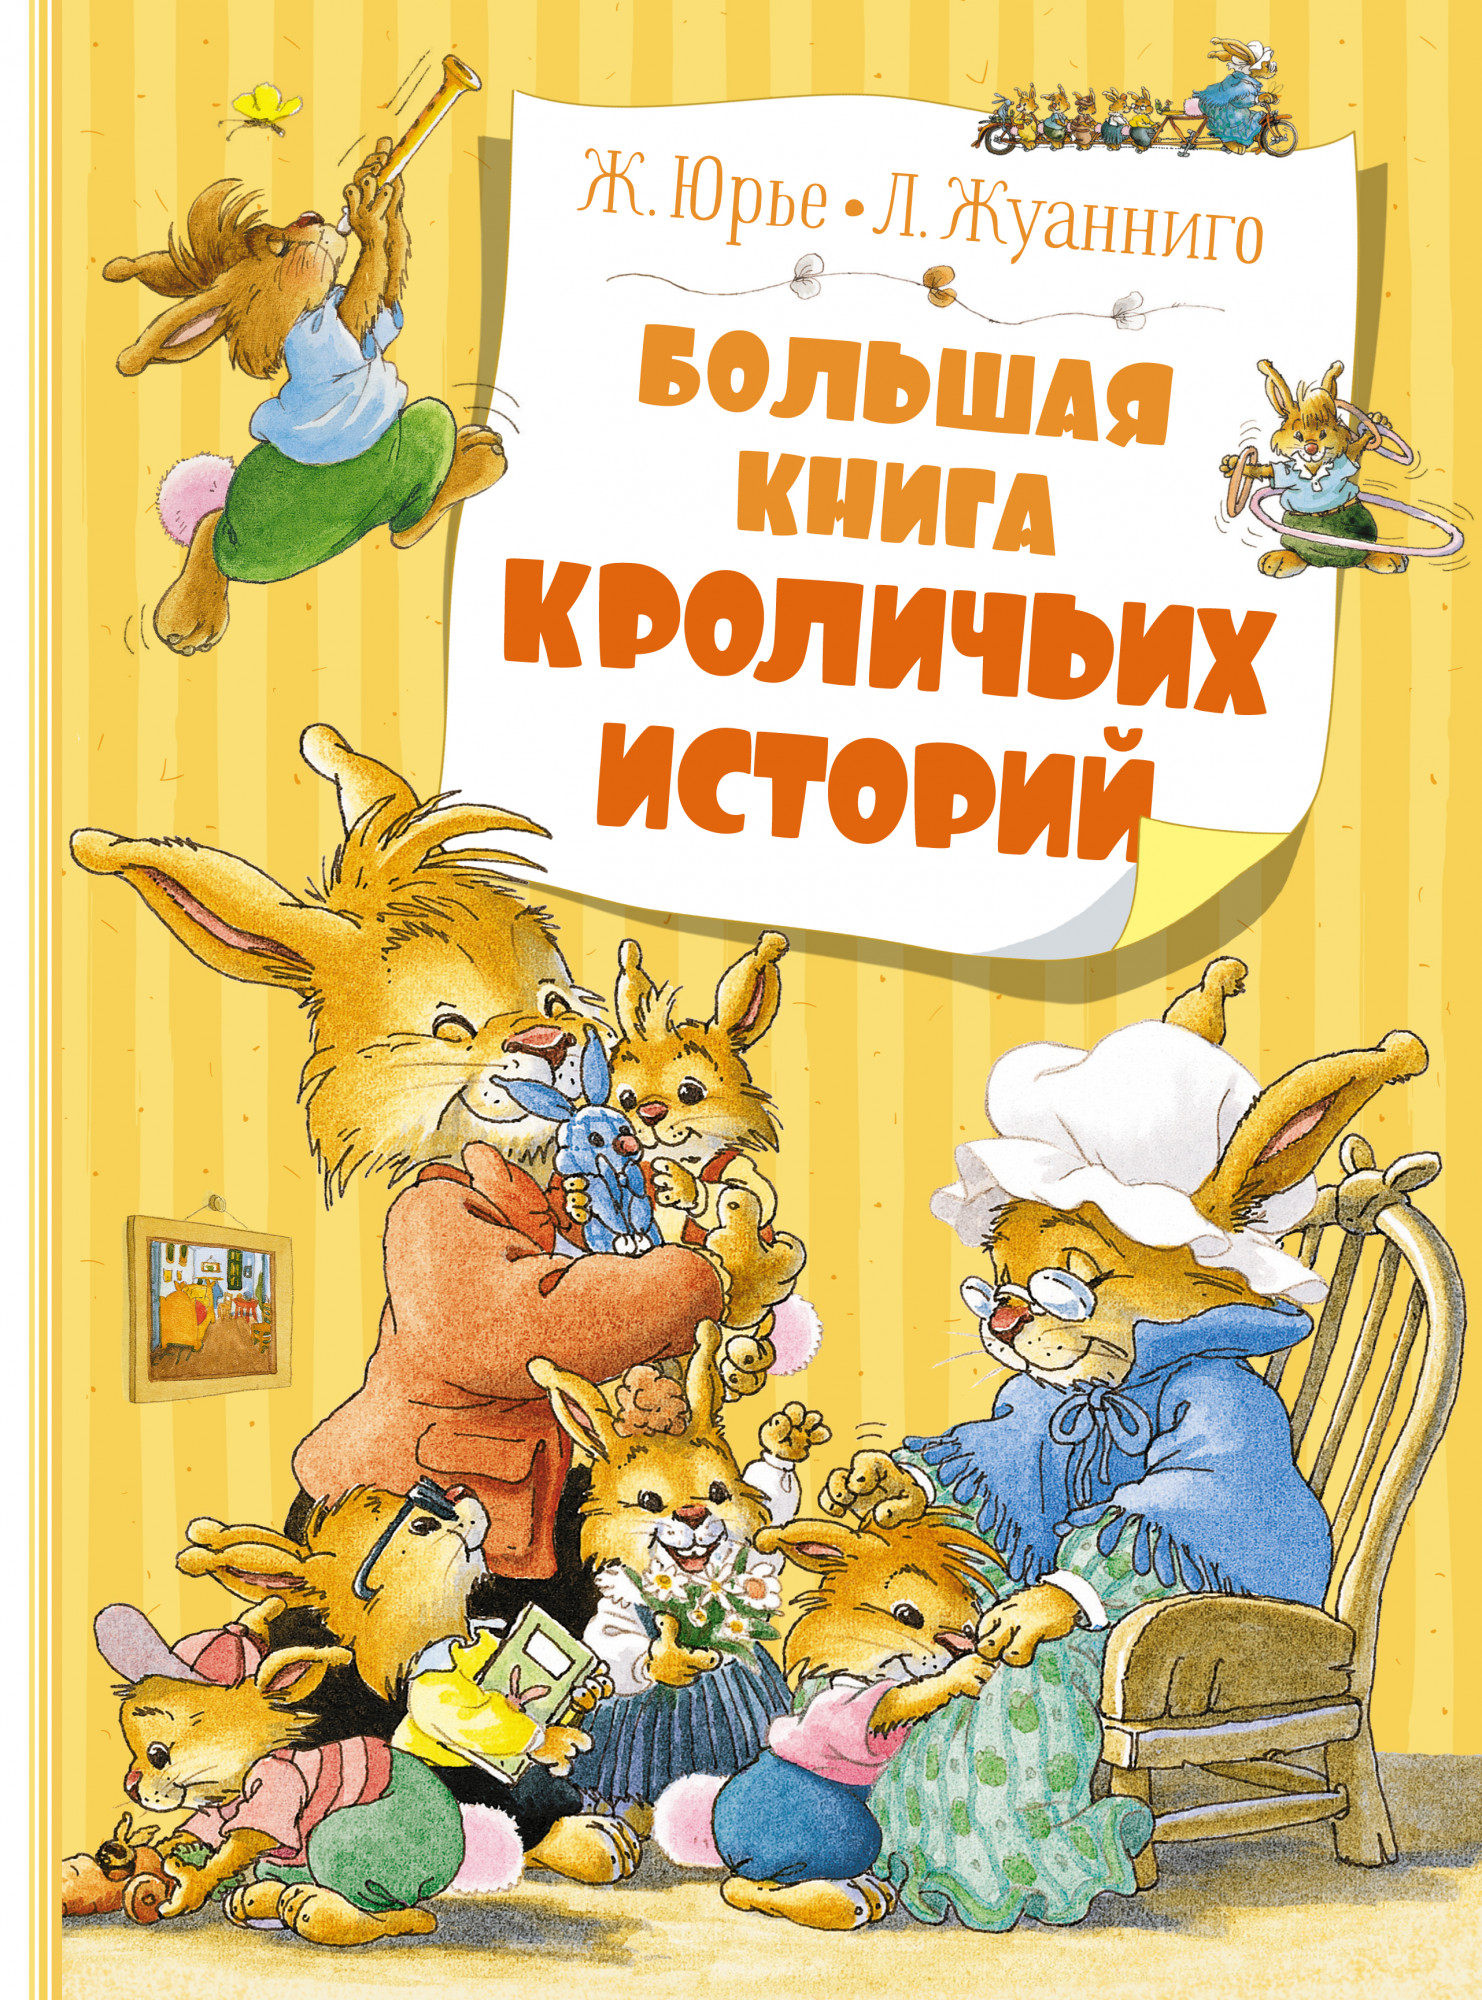 Юрье Женевьева Большая книга кроличьих историй (новое оформление) обер брижит четверо сыновей доктора марча